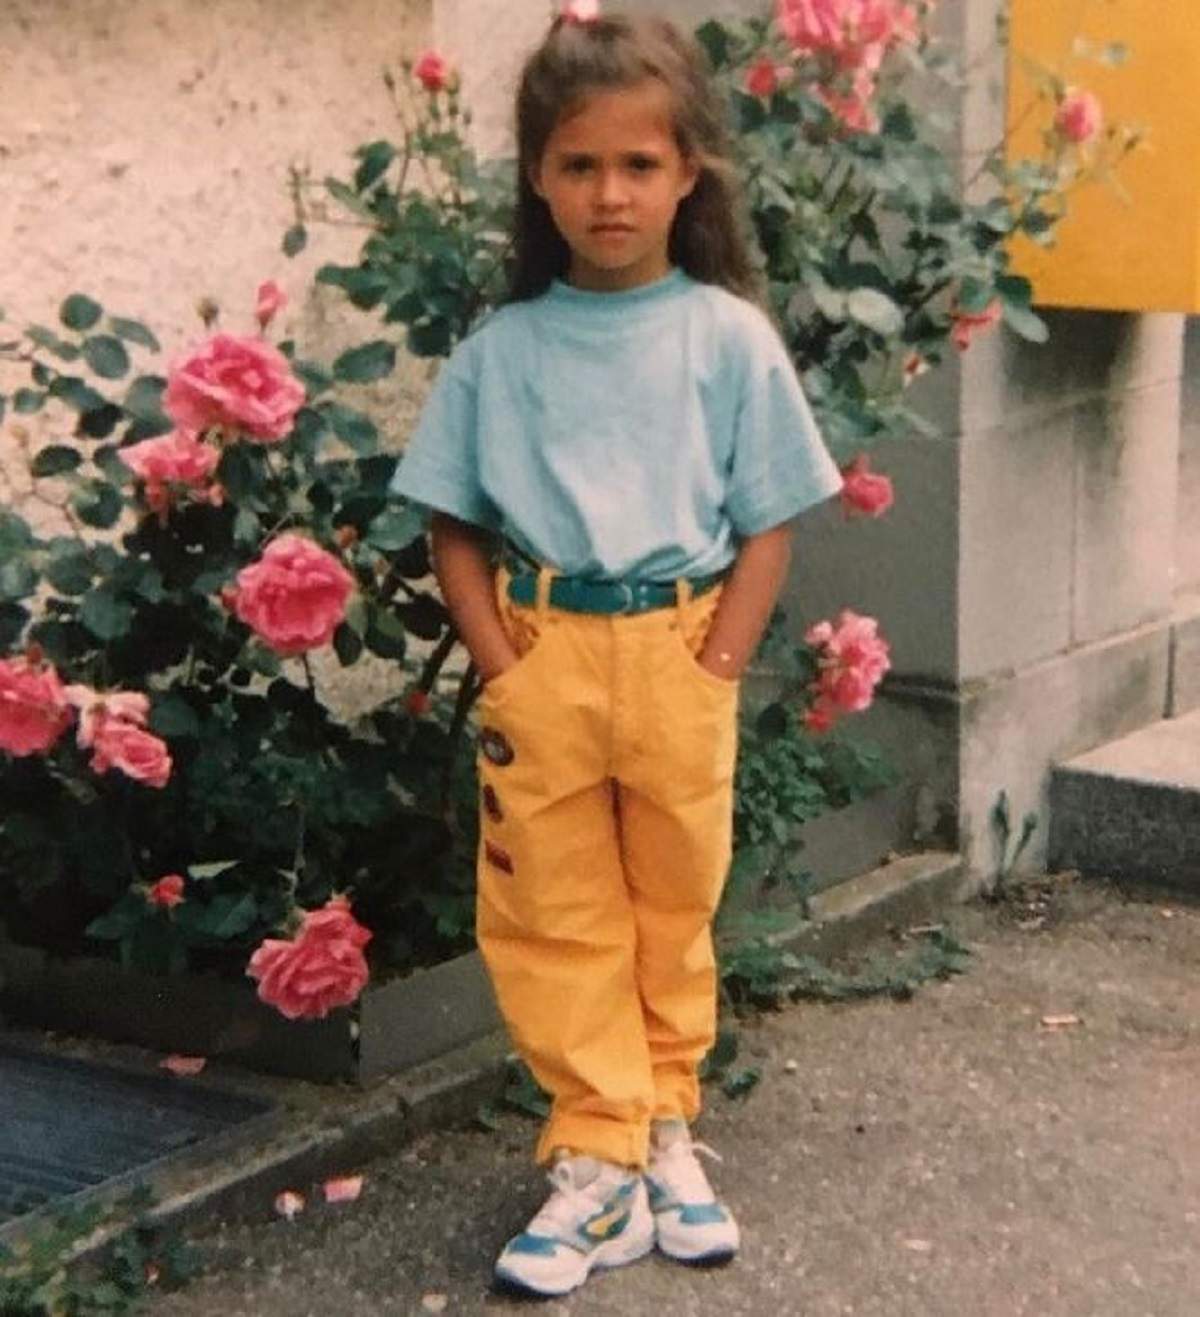 Antonia într-o poză realizată în copilărie. Artista purta un tricou bleu și pantaloni oranj. În spatele ei este o tufă de trandafiri roz.